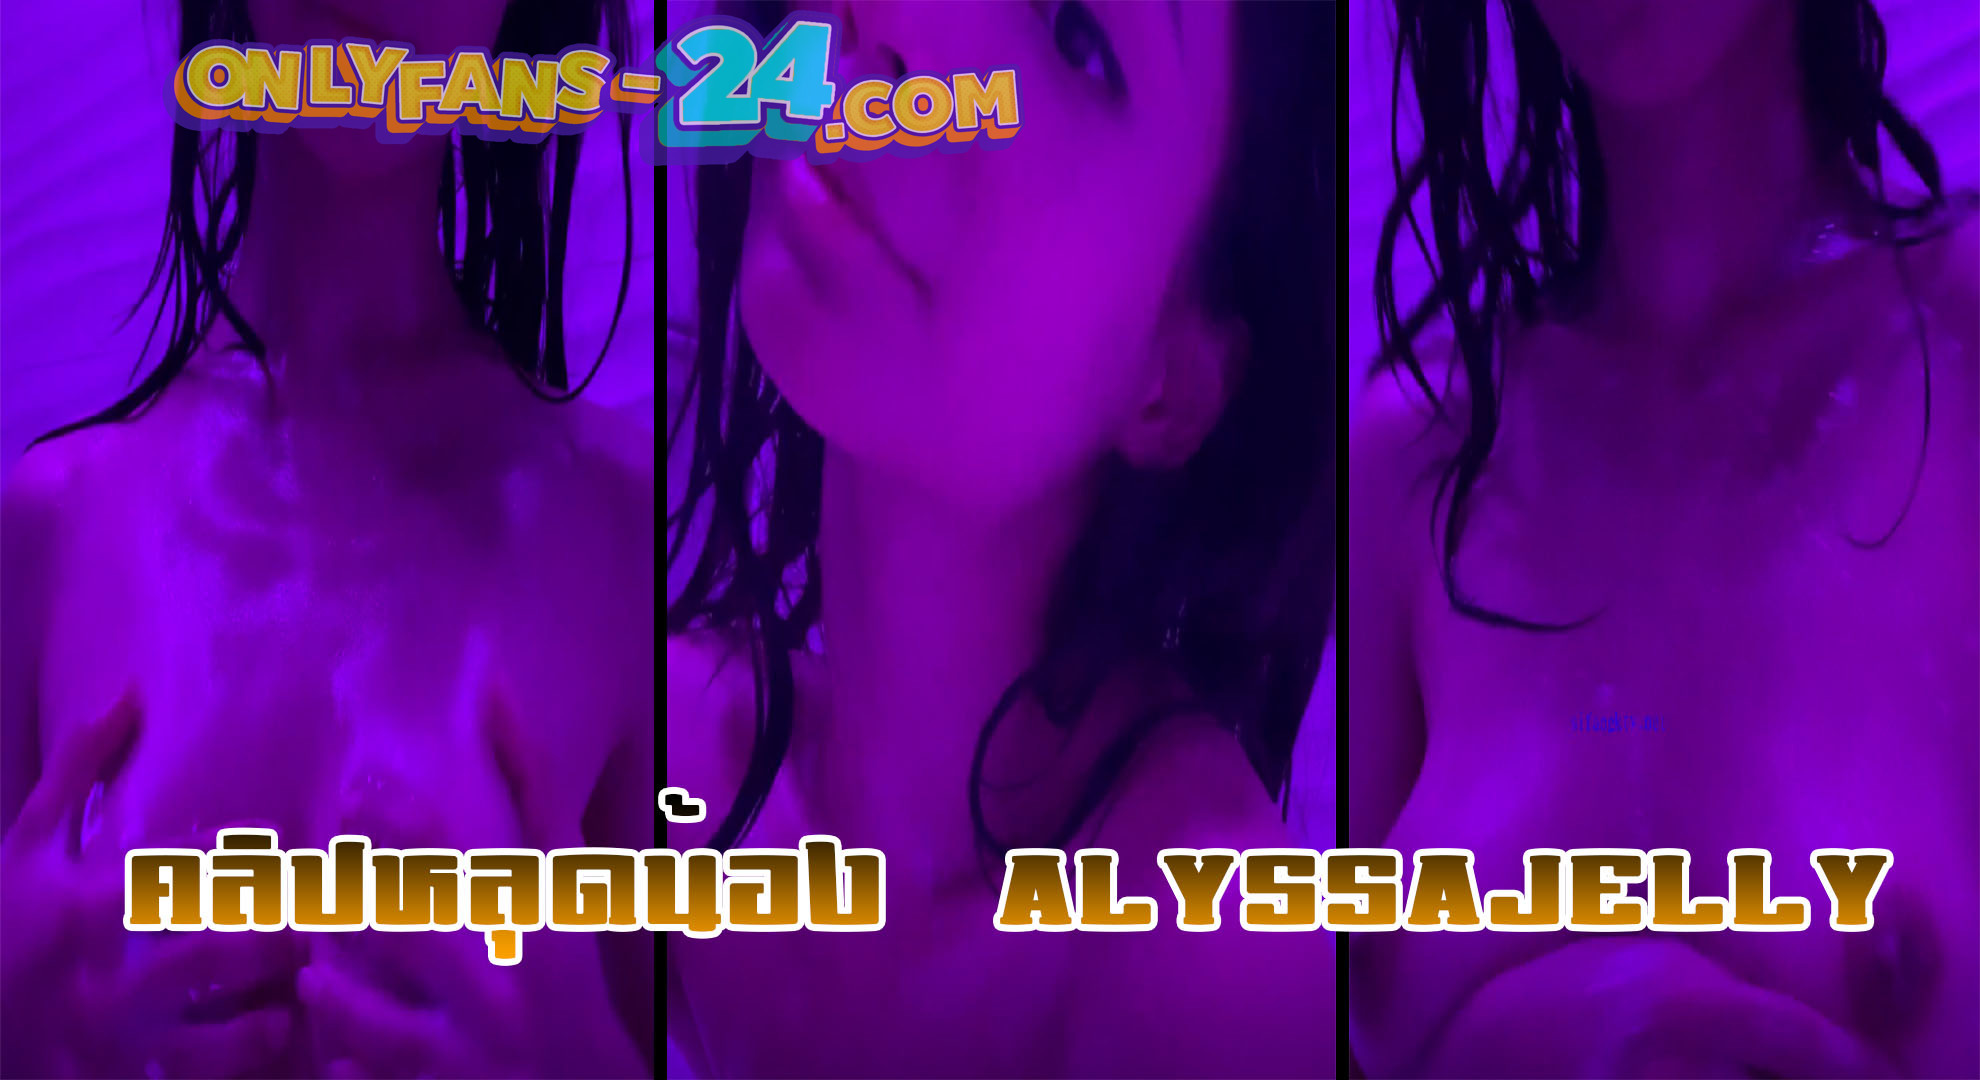 คลิปหลุดน้อง alyssajelly สาวสวยสุดเซ็กซี่ หุ่นอย่างเอ็กซ์ เปิดห้องเป็นไฟม่วง นั่งแช่อ่างน้ำเด็ดๆ ยั่วๆกล้อง